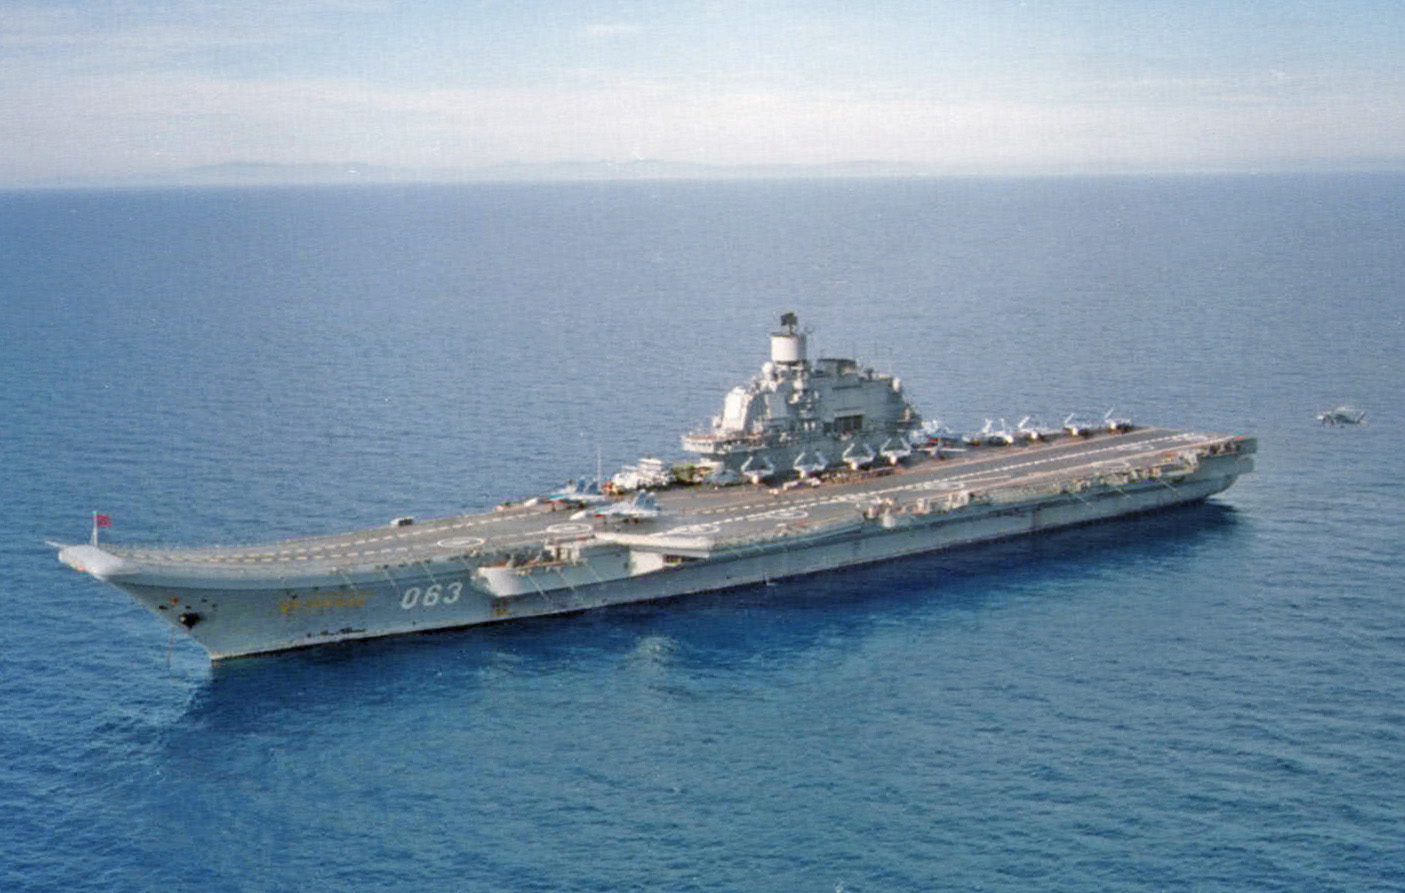 Il gruppo navale russo della Kuznestov in Mediterraneo, sosta al largo del Marocco per rifornimento carburante